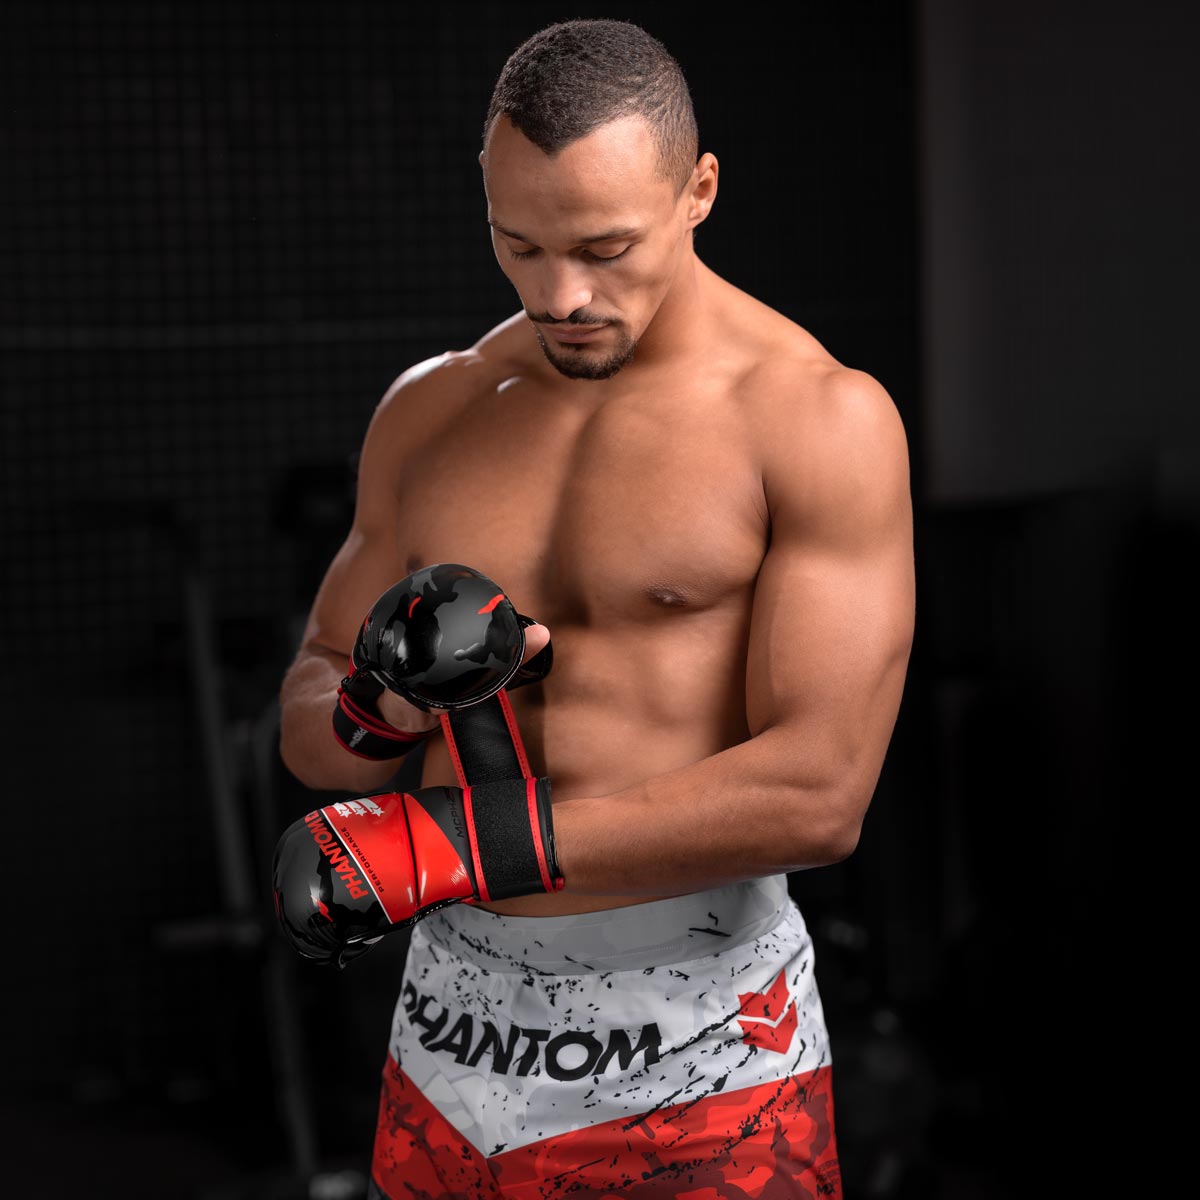 Karan Mosebach bereitet sich auf sein MMA Sparring vor mit den neuen Phantom Raider Trainingshandschuhen und trägt dabei die Phantom Flex Fightshorts